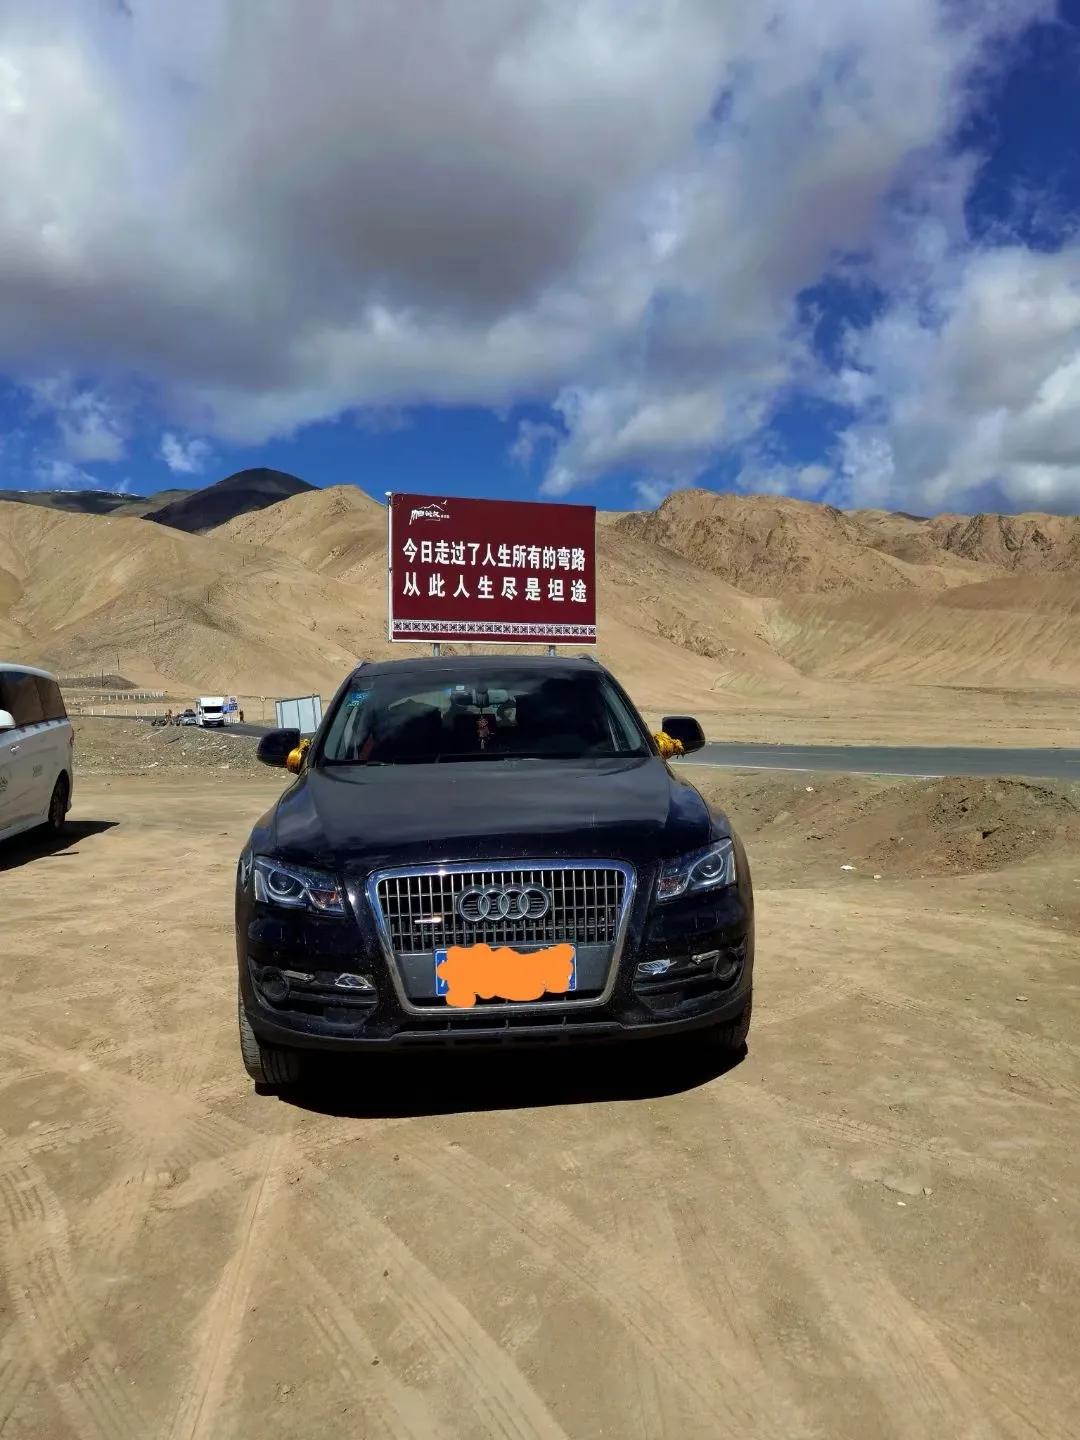 一车两人自驾游新疆35天总费用情况